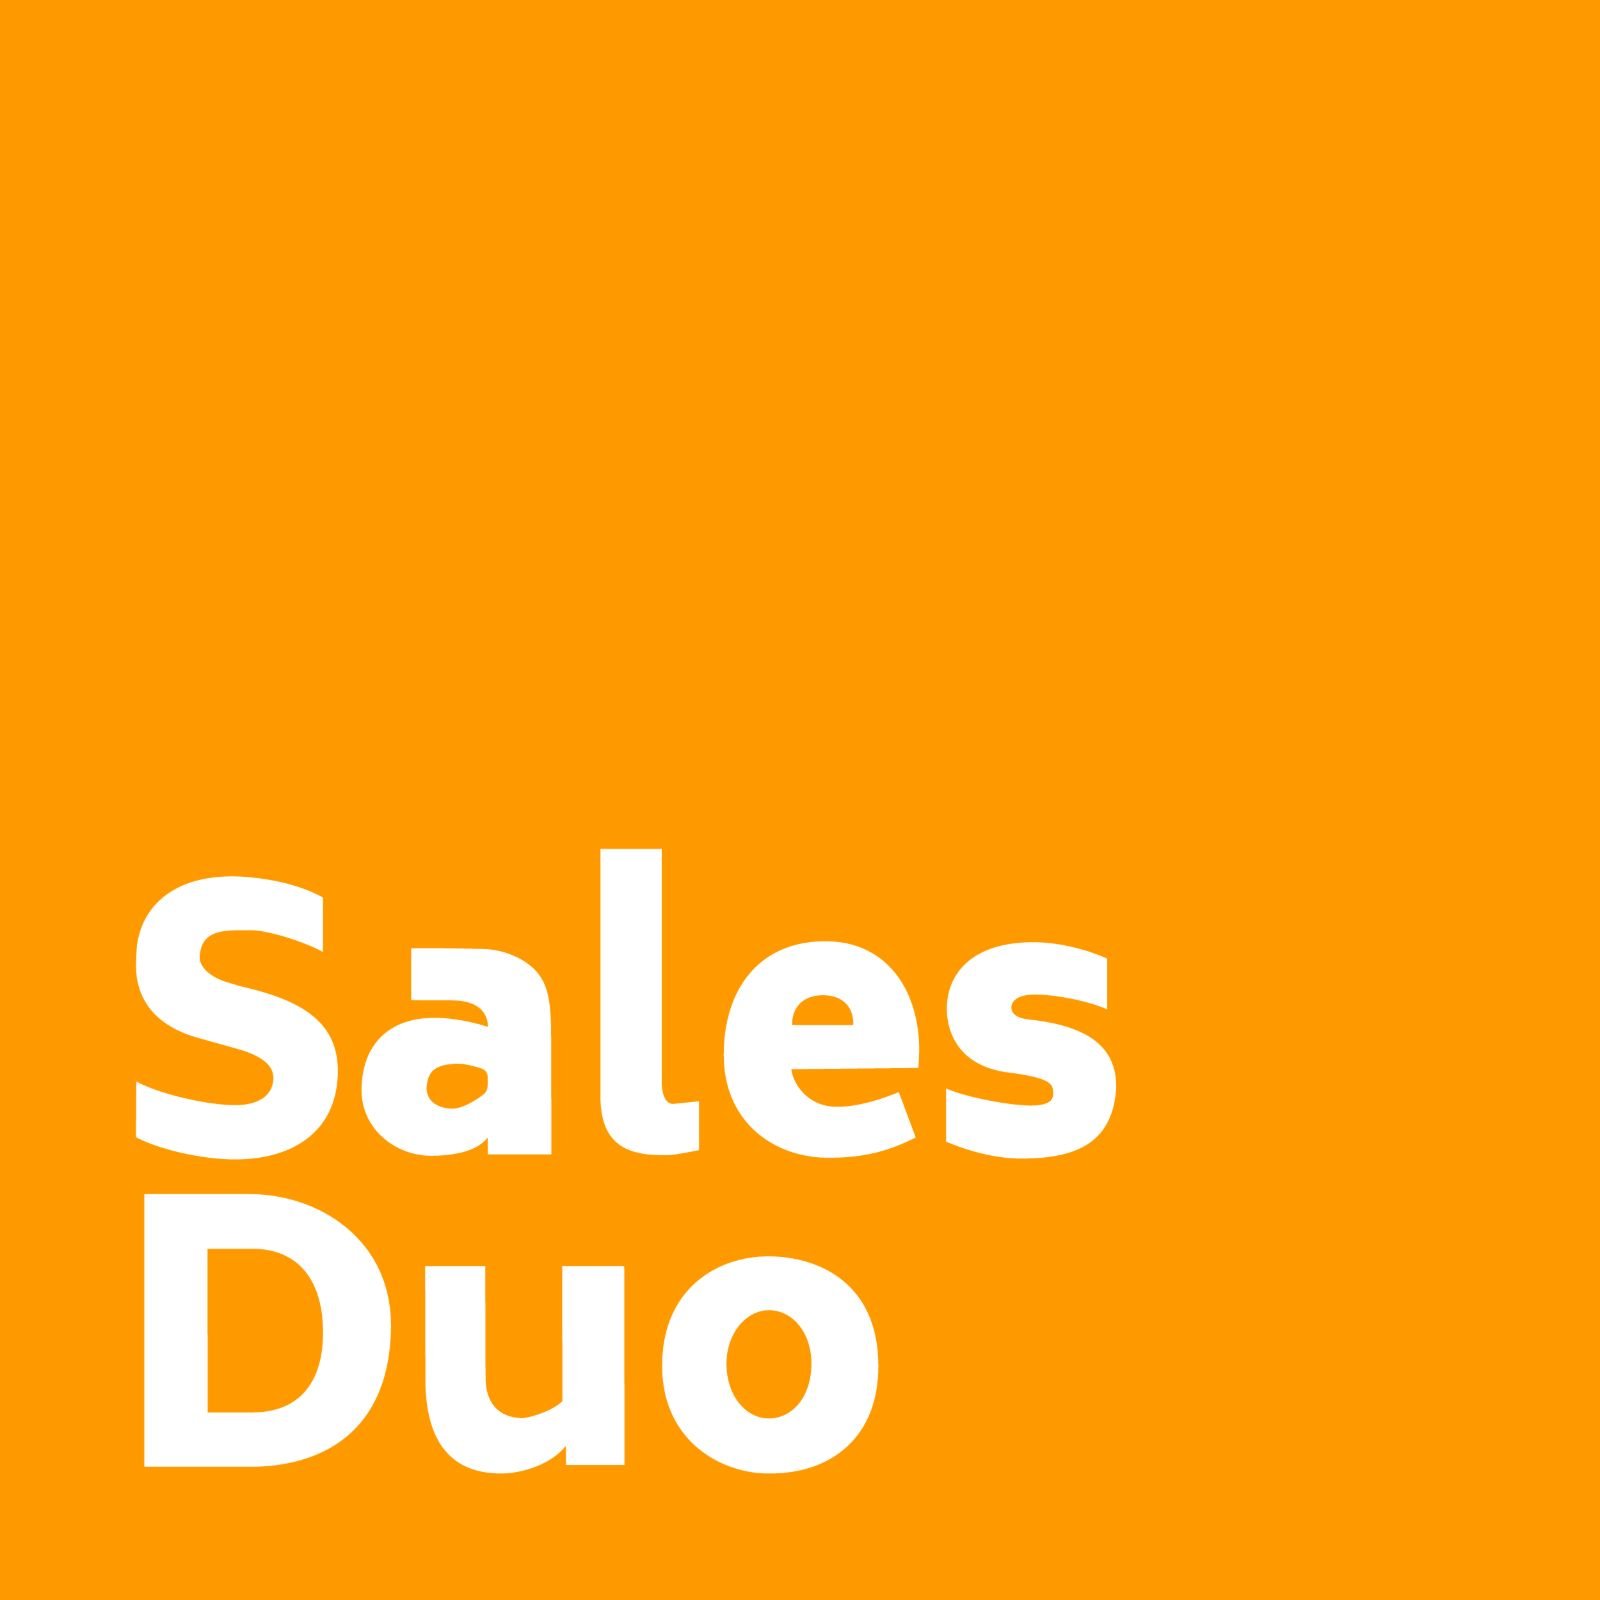 SalesDuo Full Service Amazon Agency